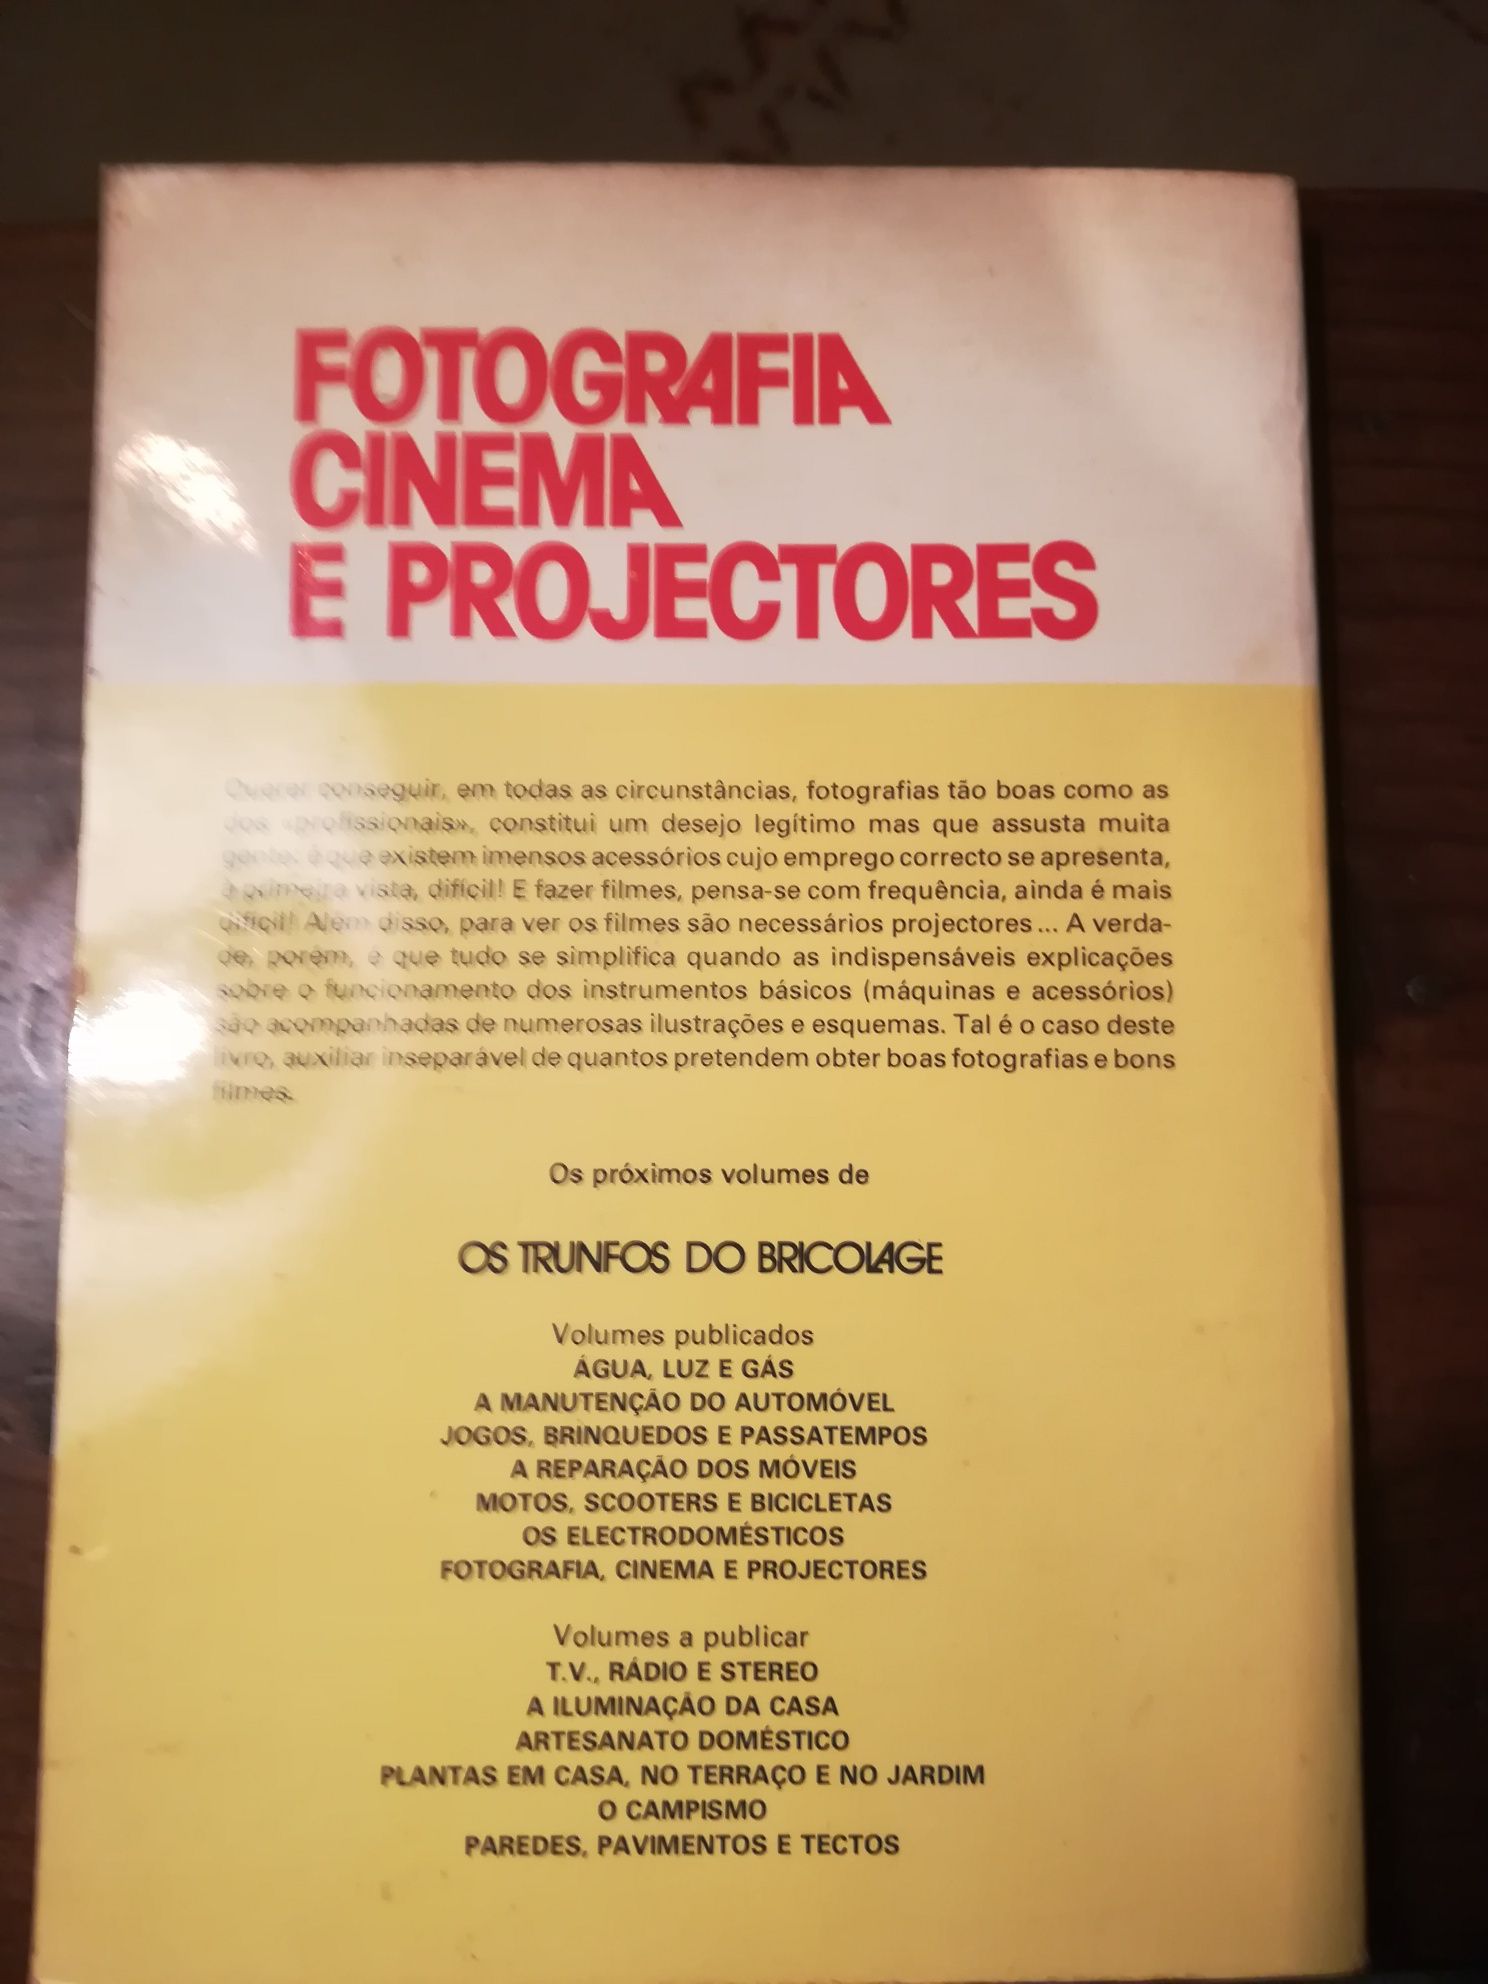 Fotografia cinema e projectores (1977)